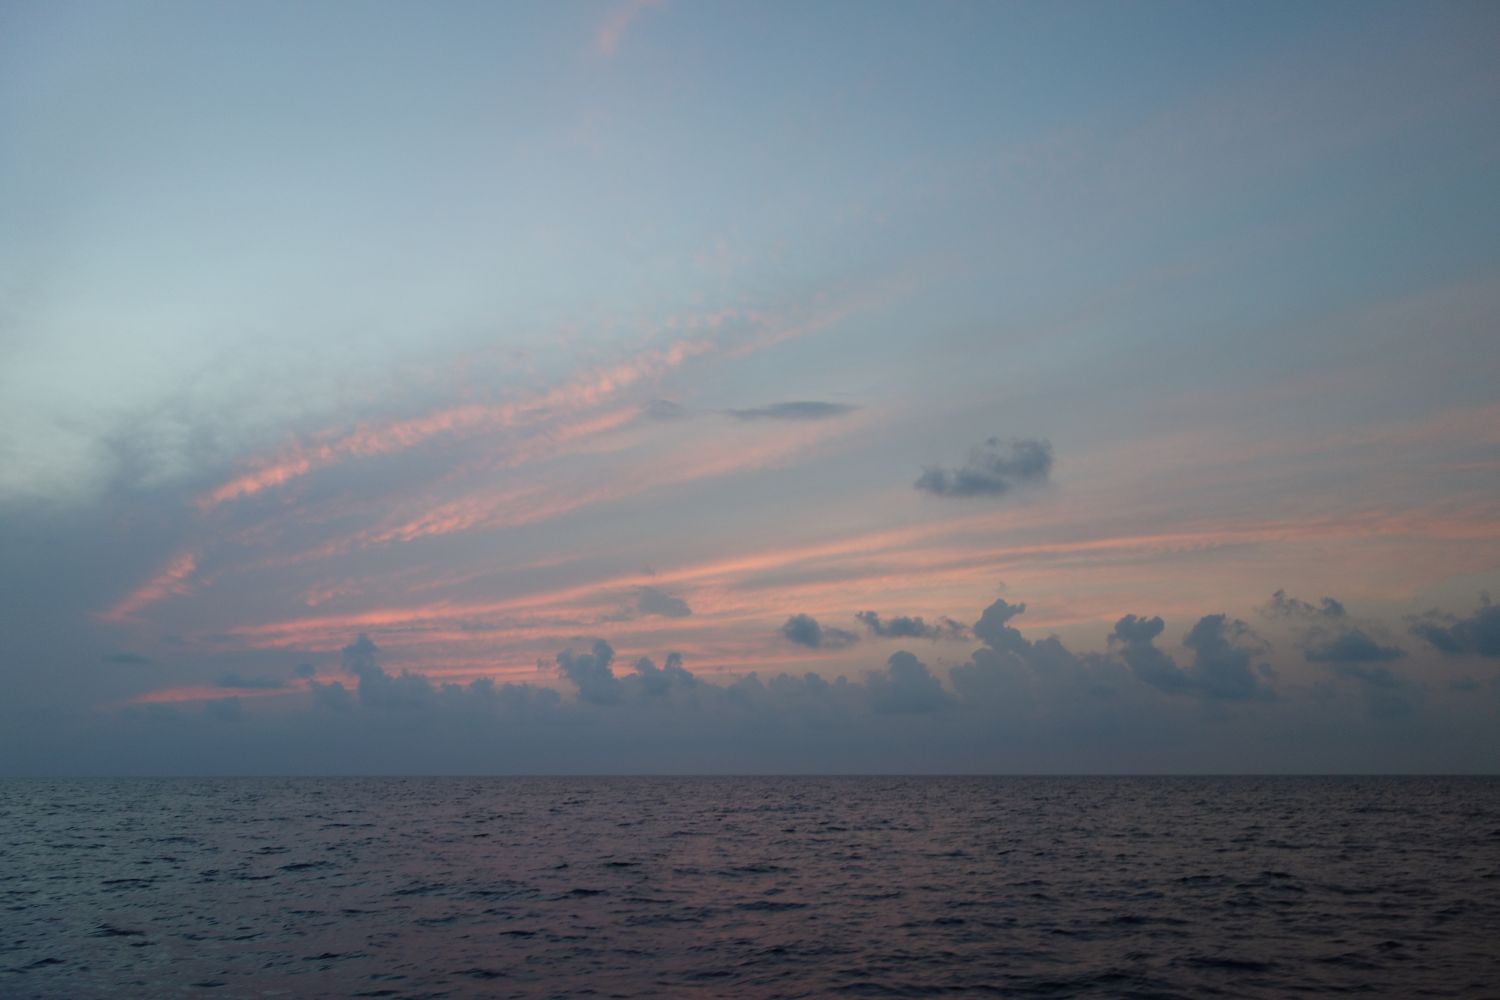 Die Wolkenberge habe ich nicht fotografiert - erst kurz vor Sonnenuntergang gabs ein Wolkenfoto